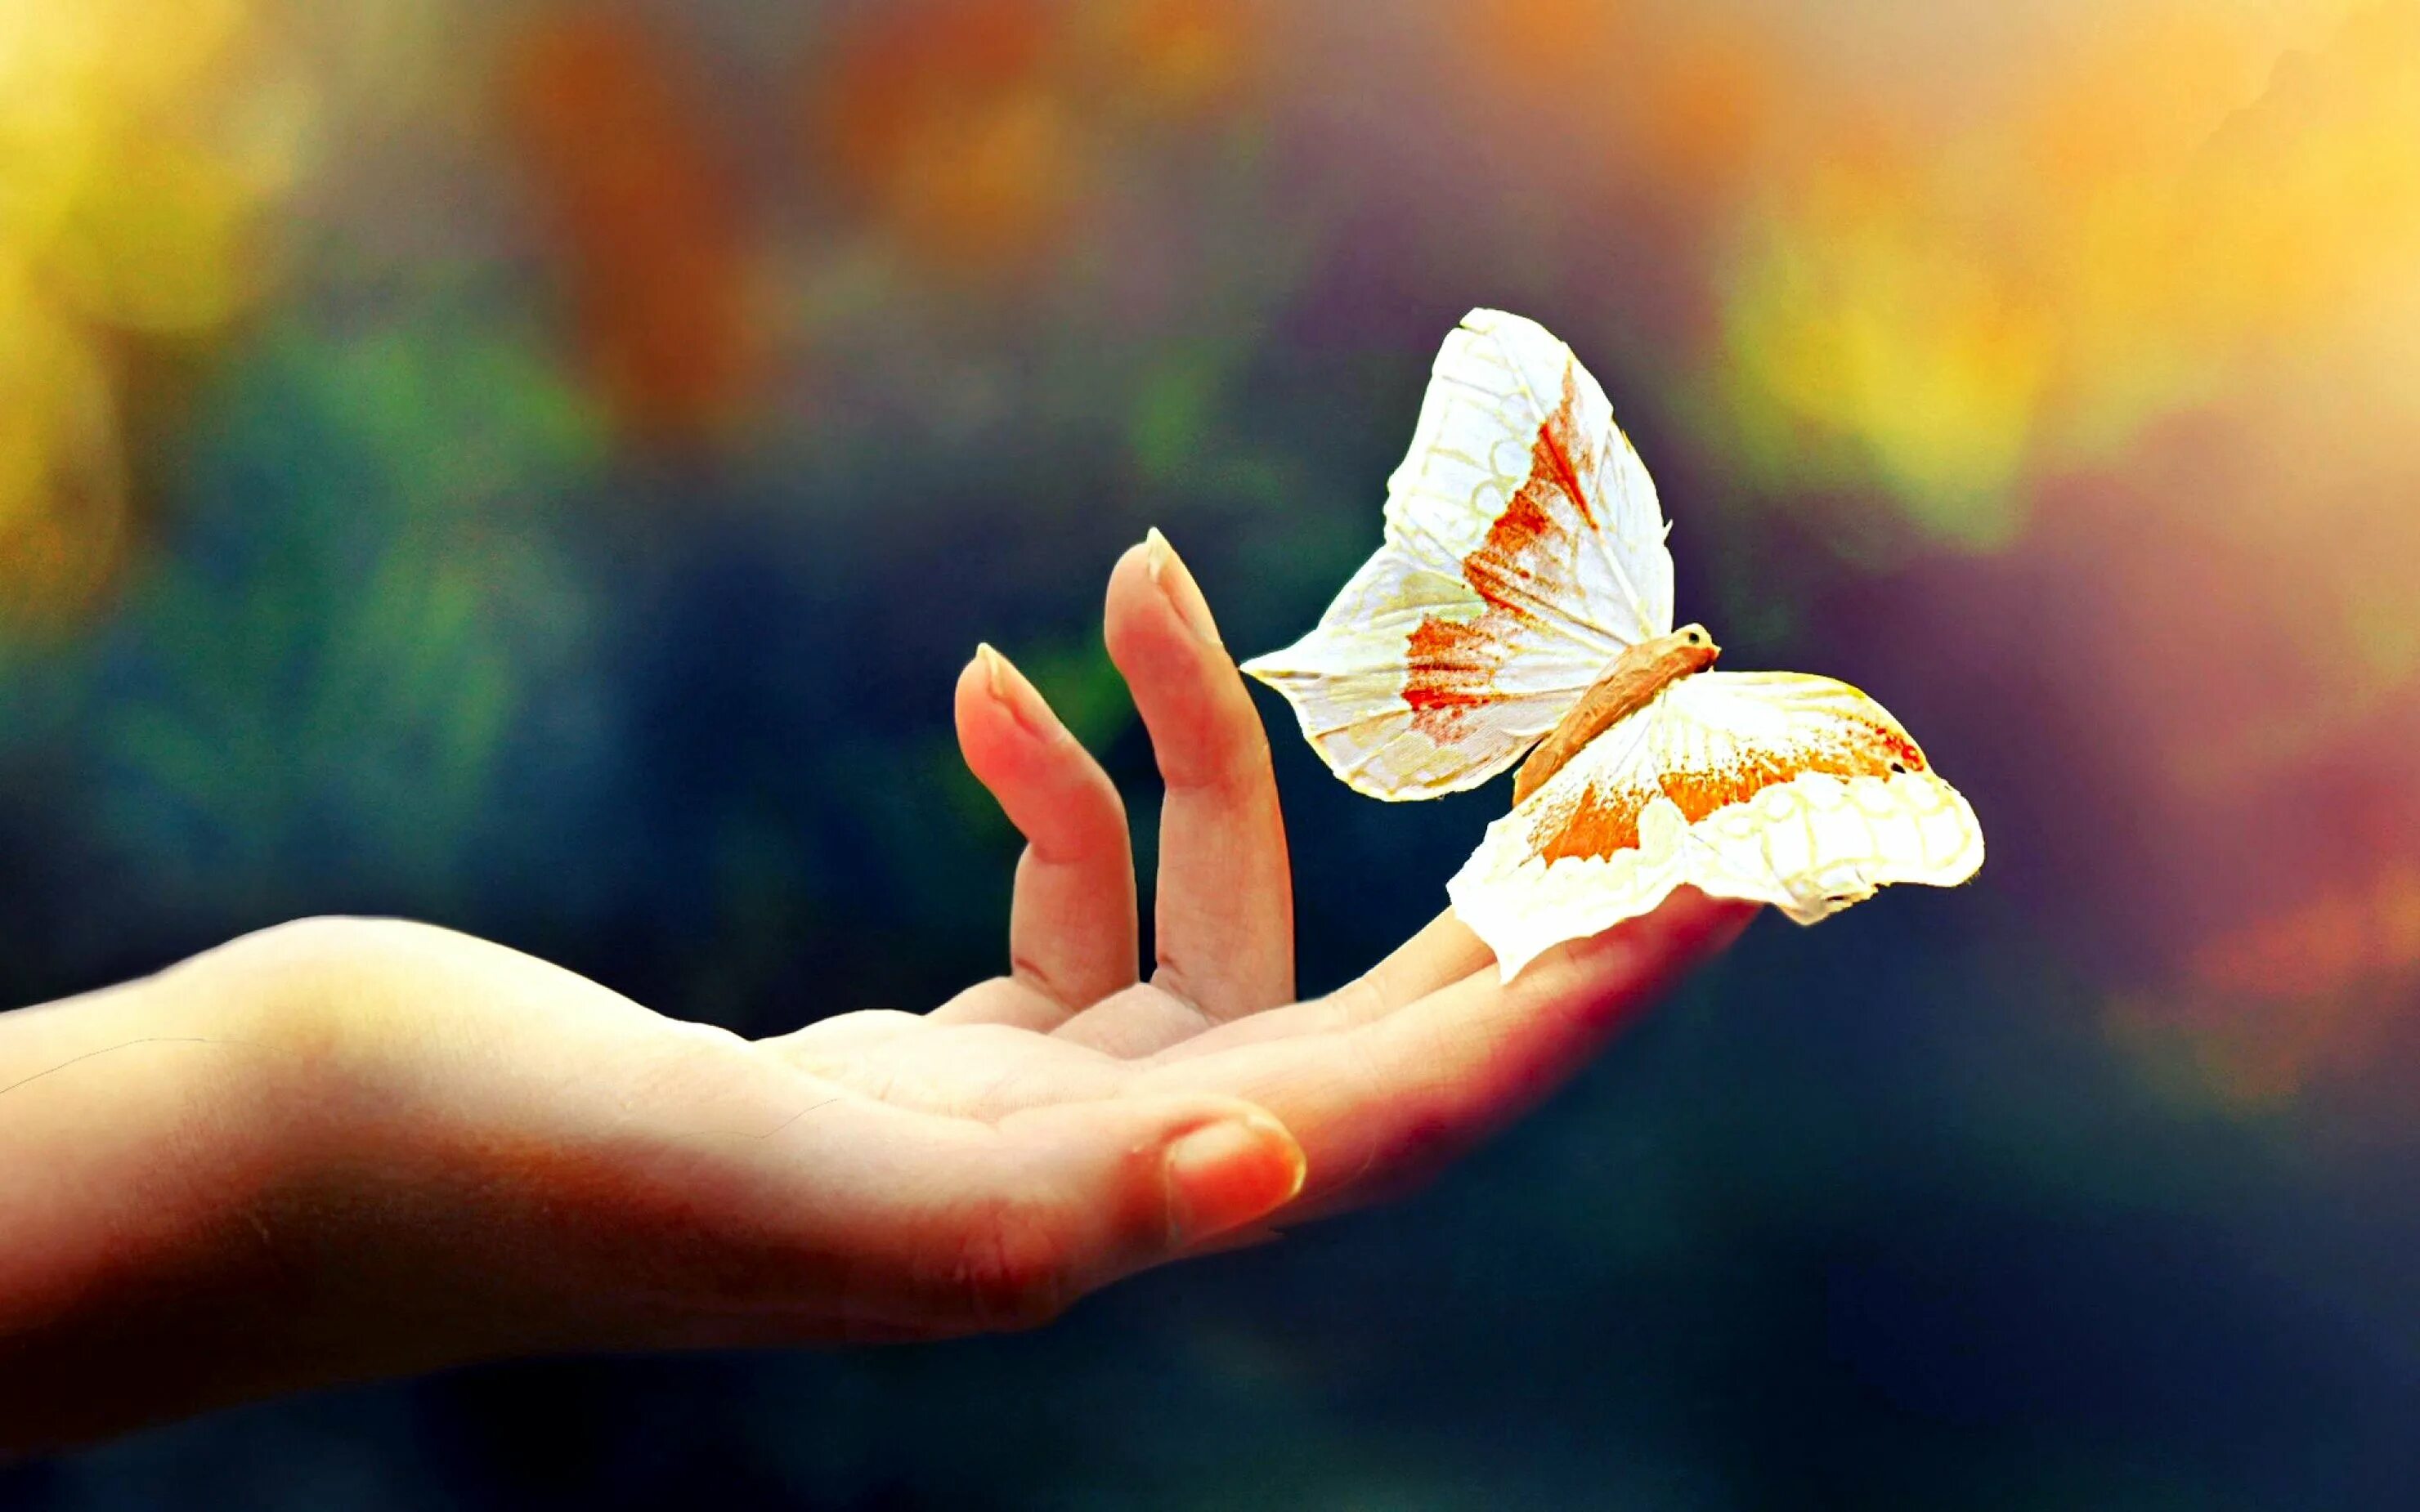 Добро картинки красивые с надписью. Бабочка на ладони. На руку бабочка. Эстафета добра. Счастье подобно бабочке.